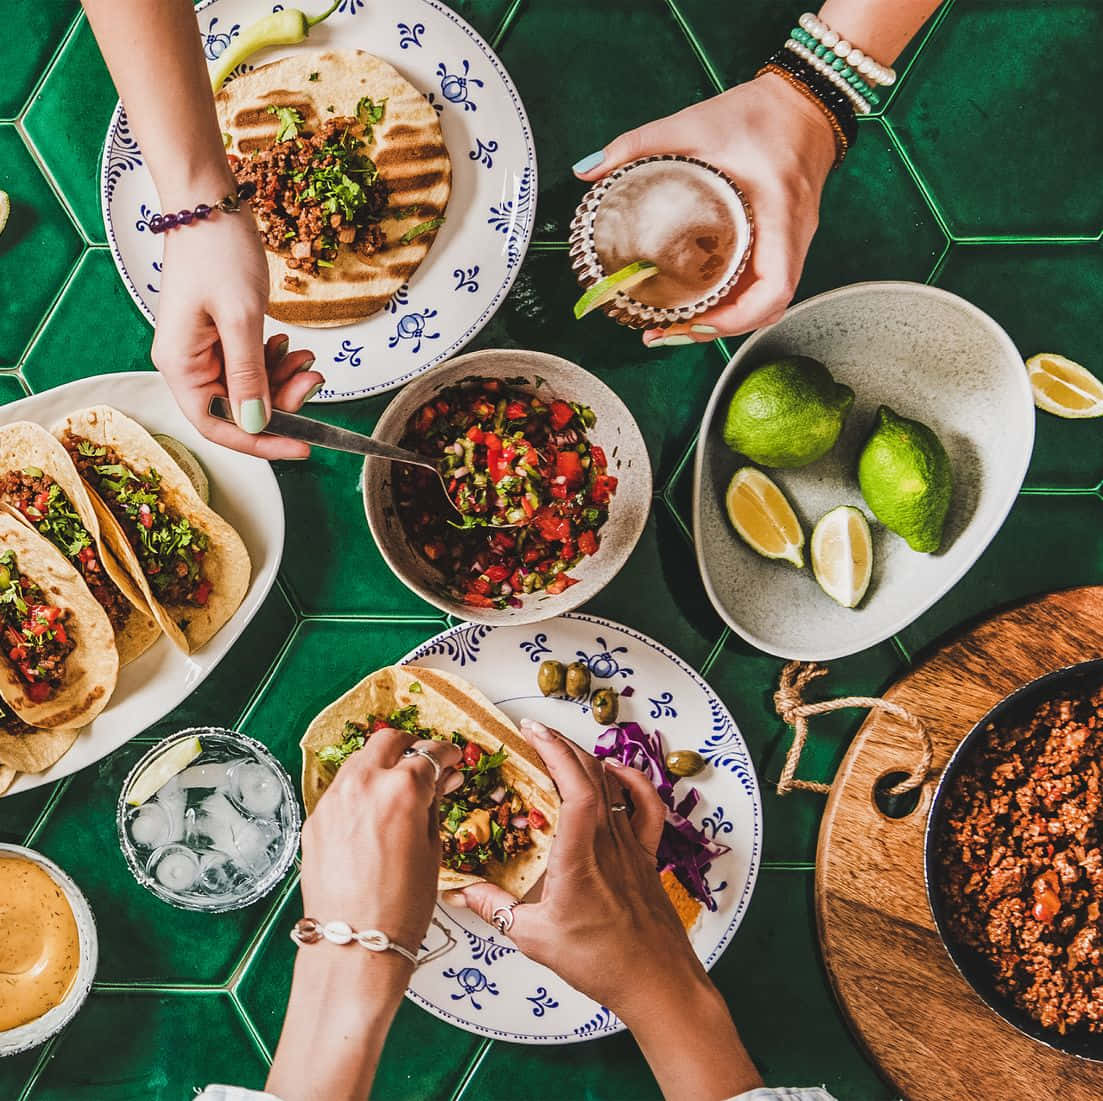 Ungrupo De Personas Comiendo Tacos En Una Mesa Con Azulejos Verdes